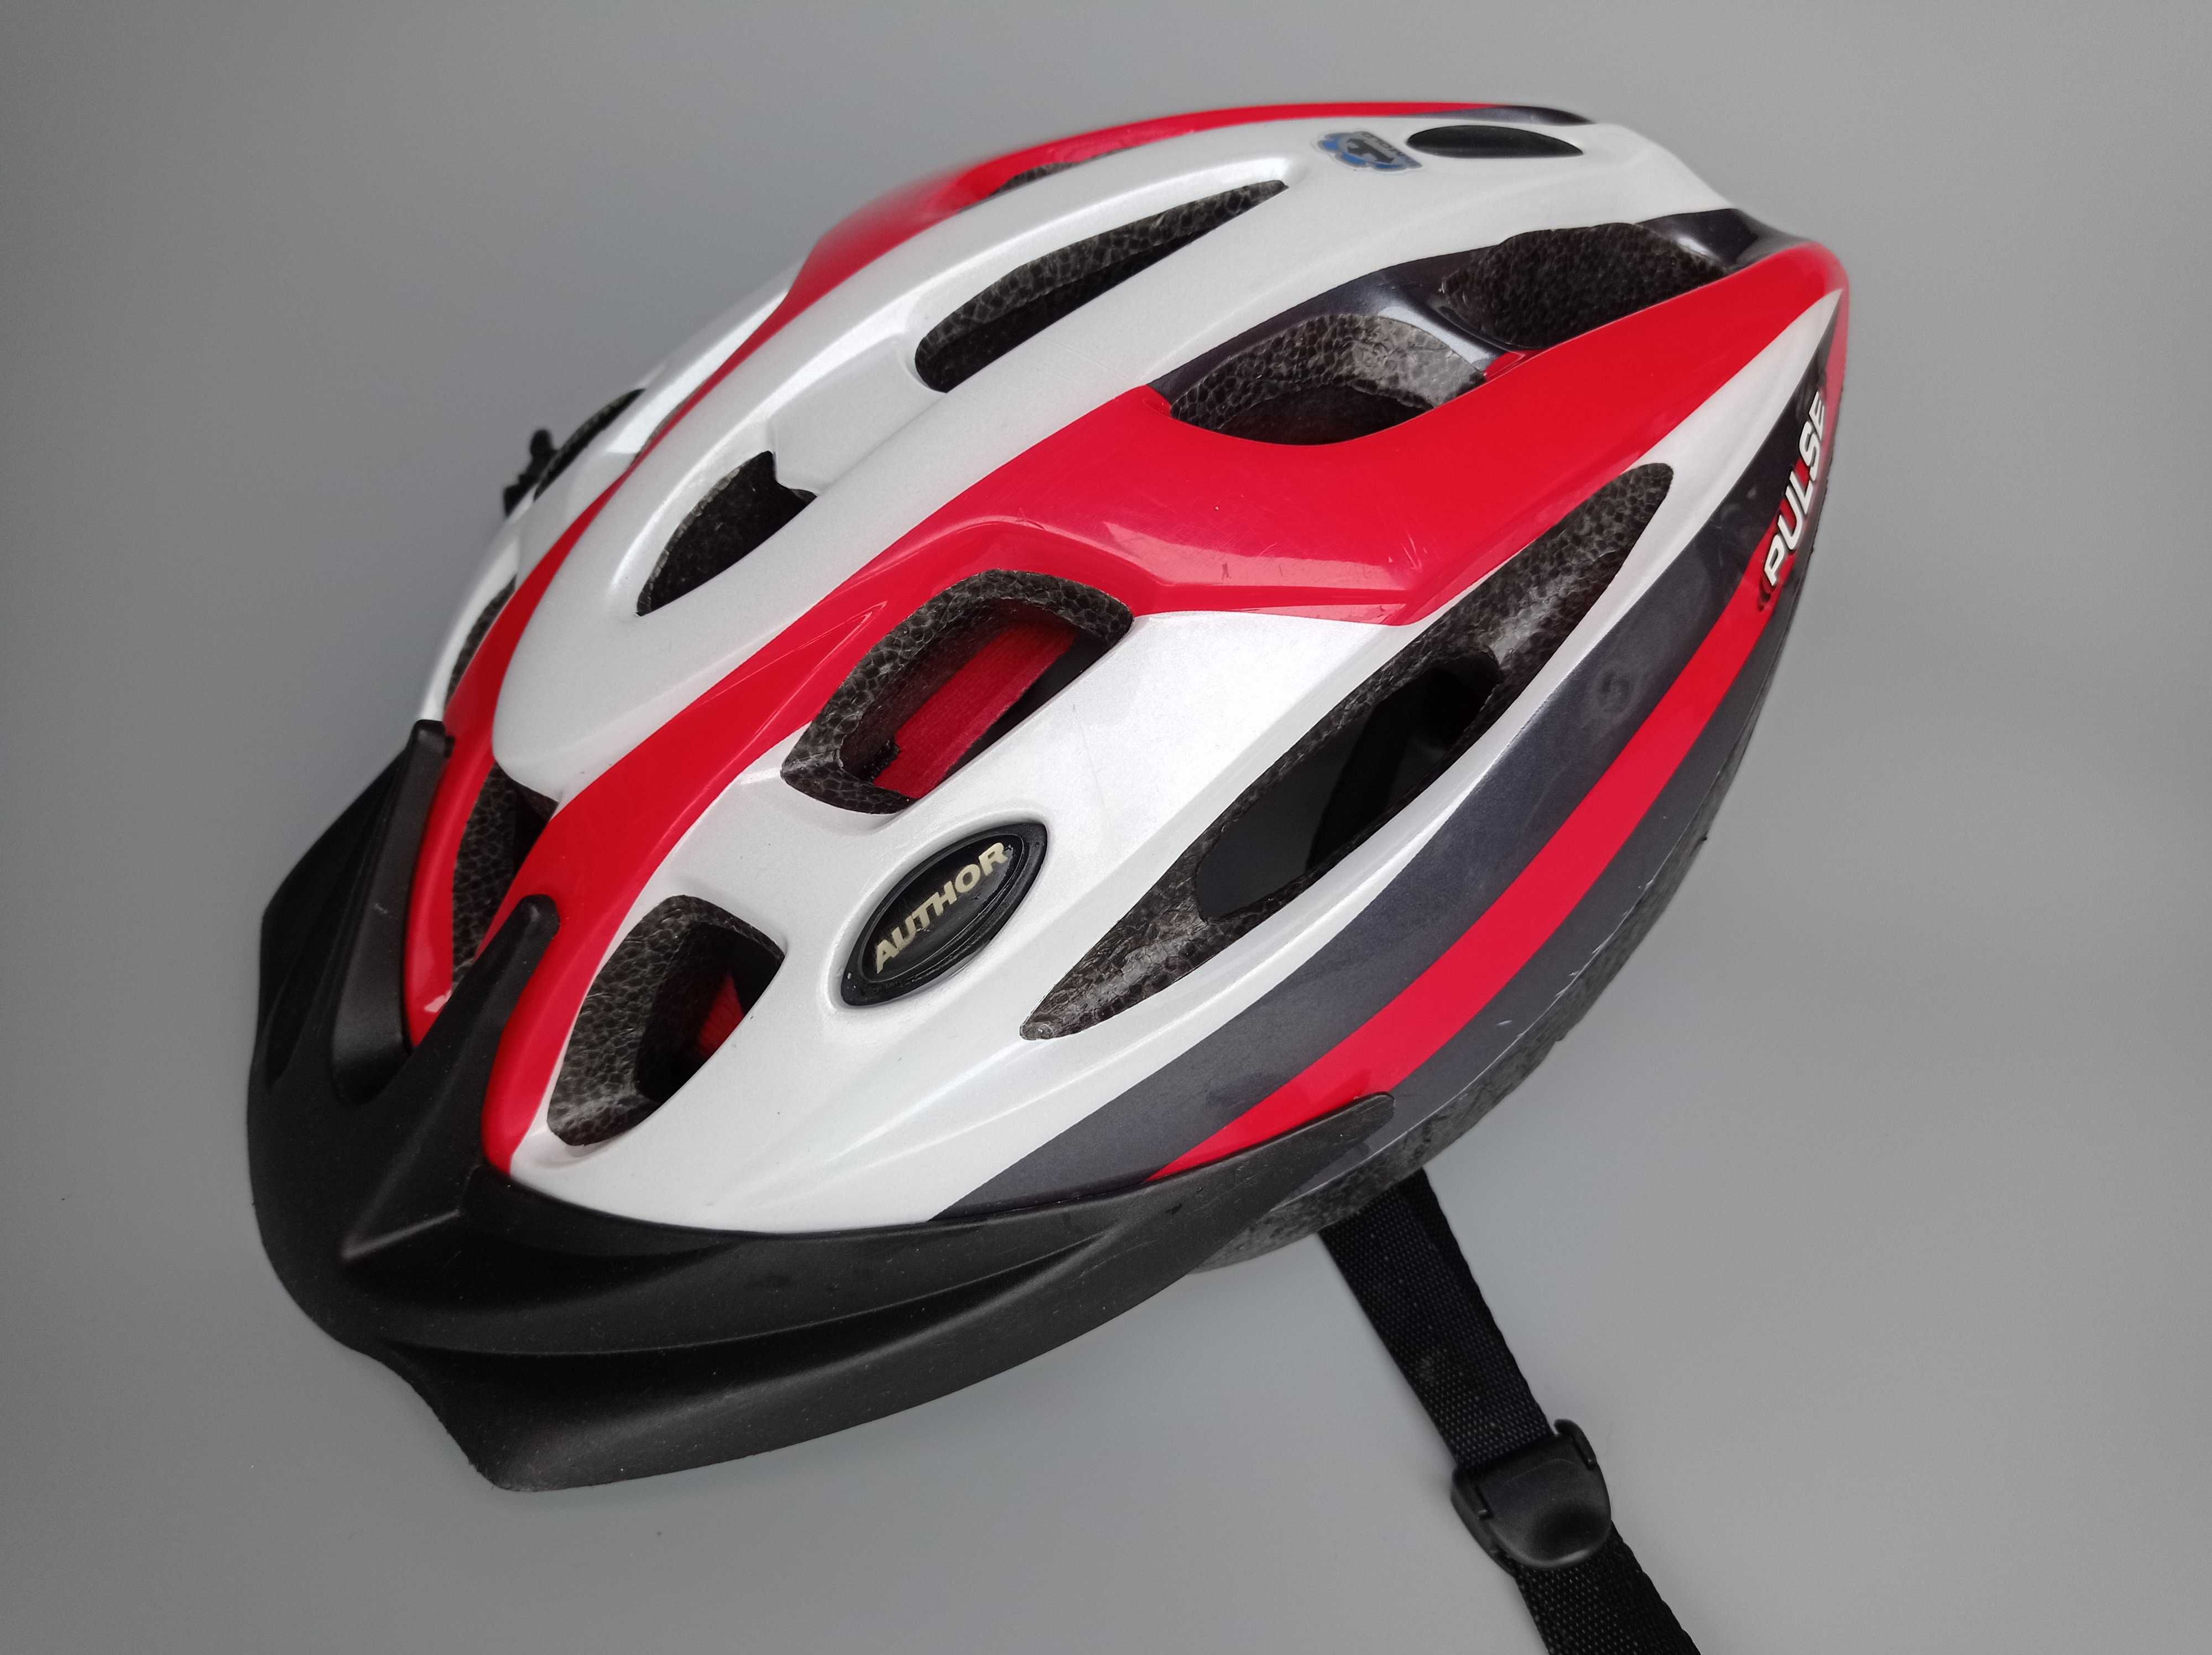 Шлем защитный Author Pulse, размер S 50-56см, велосипедный, Германия.